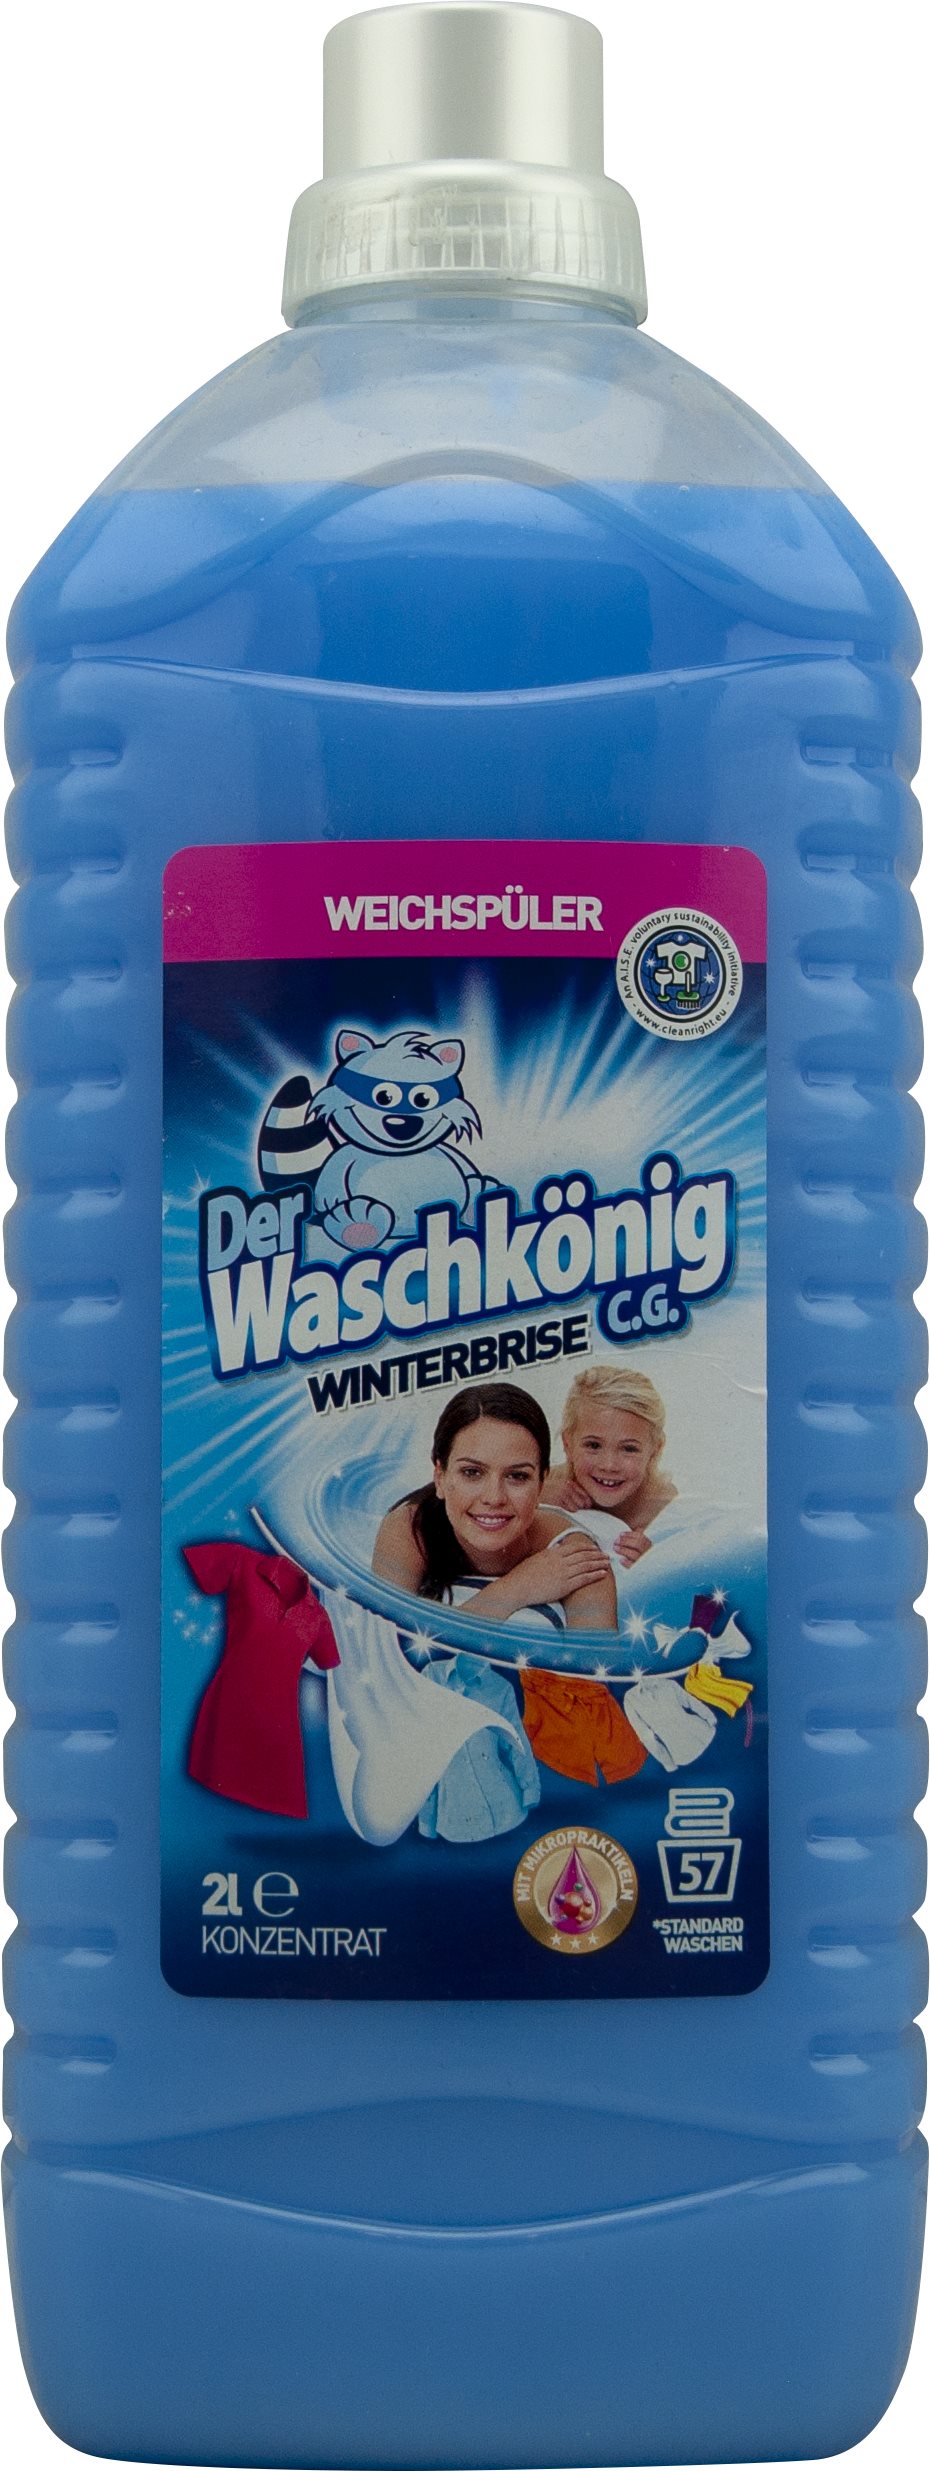 DER WASCHKÖNIG Koncentrált öblítő - Winter Breeze 2 l (57 mosás)